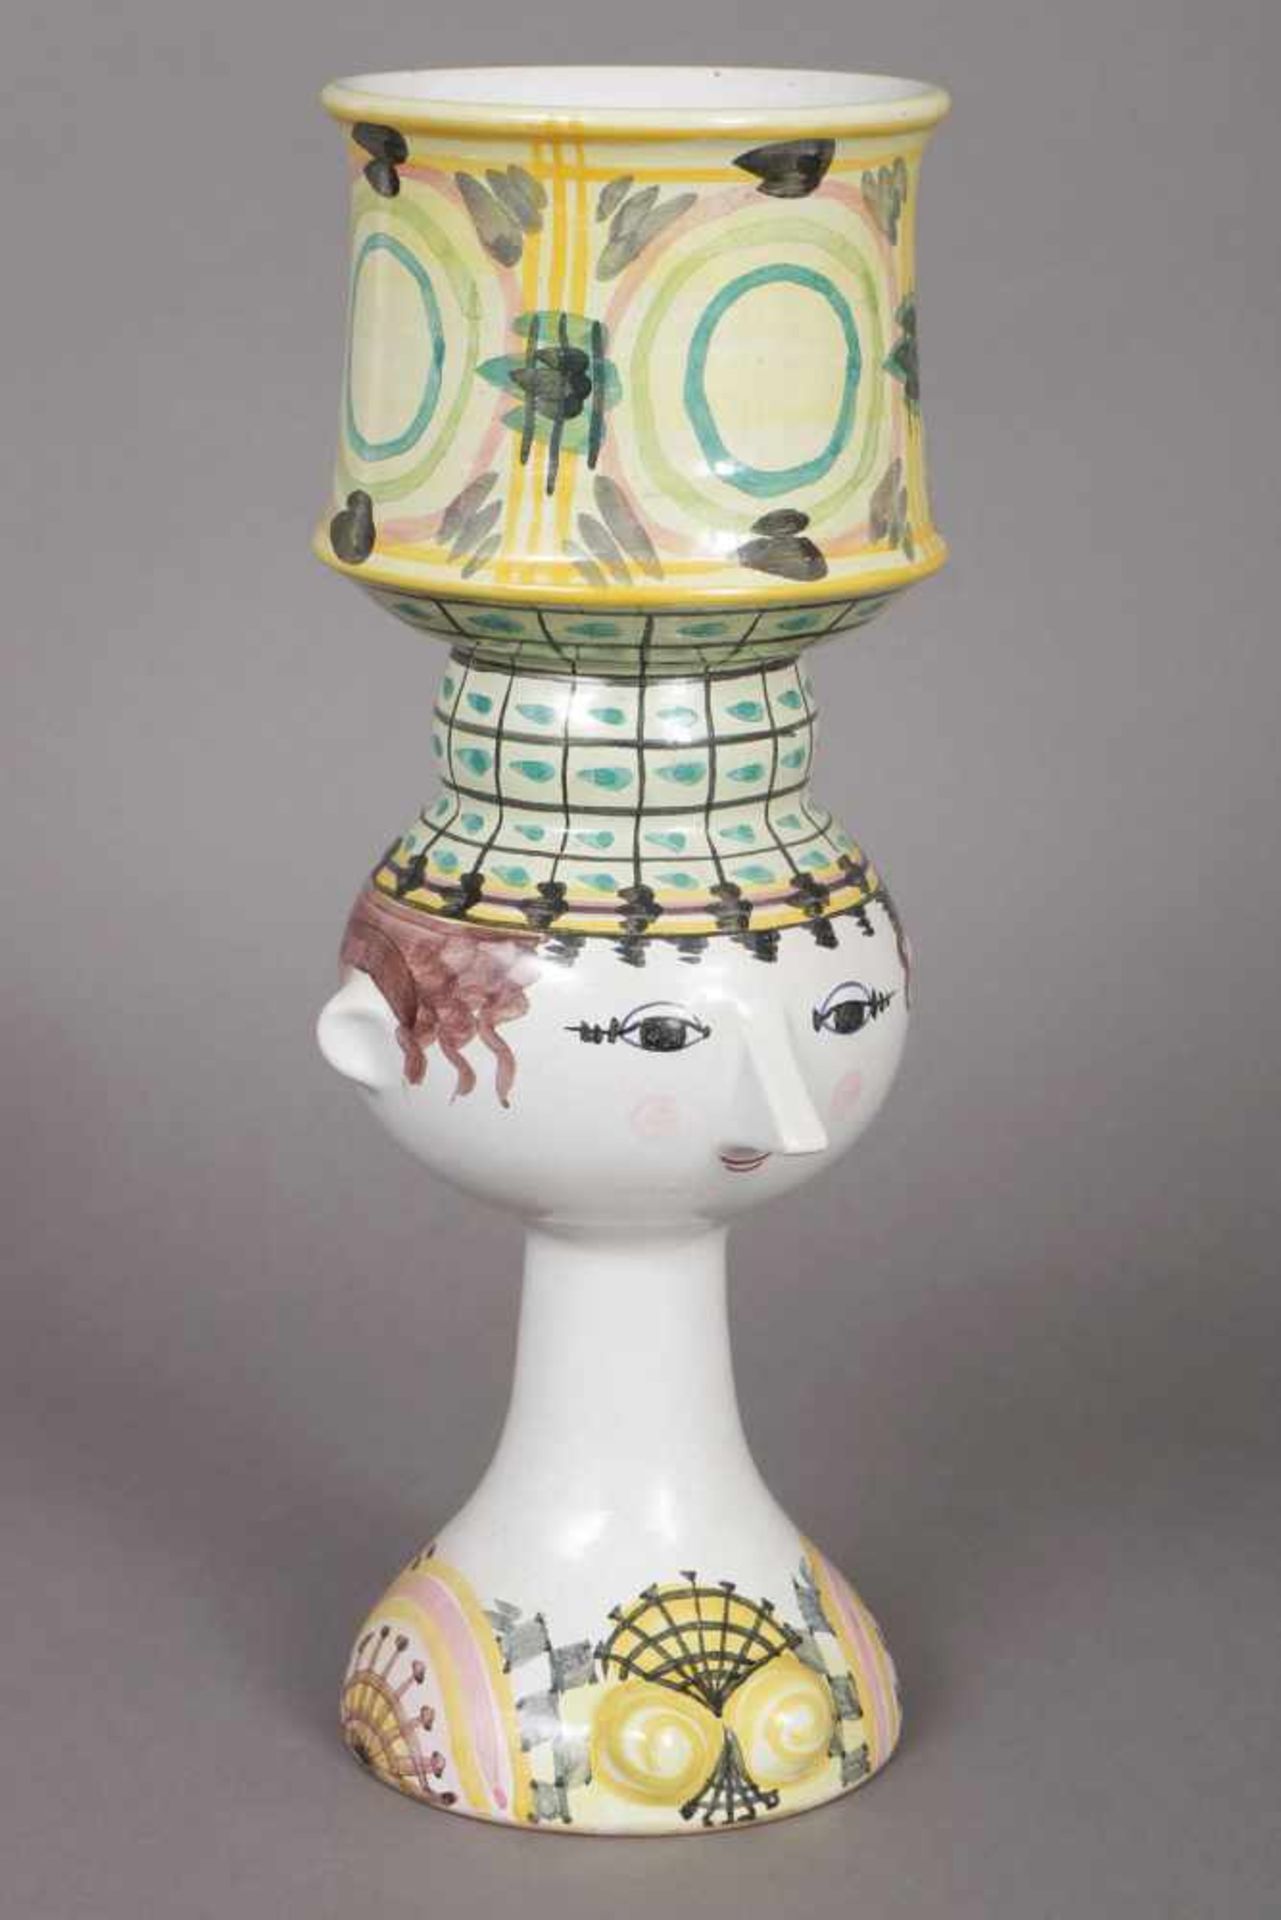 BJÖRN WIINBLAD Fußschale in Form eines Kopfes Keramik, farbig staffiert, zylindrischer Schalen-